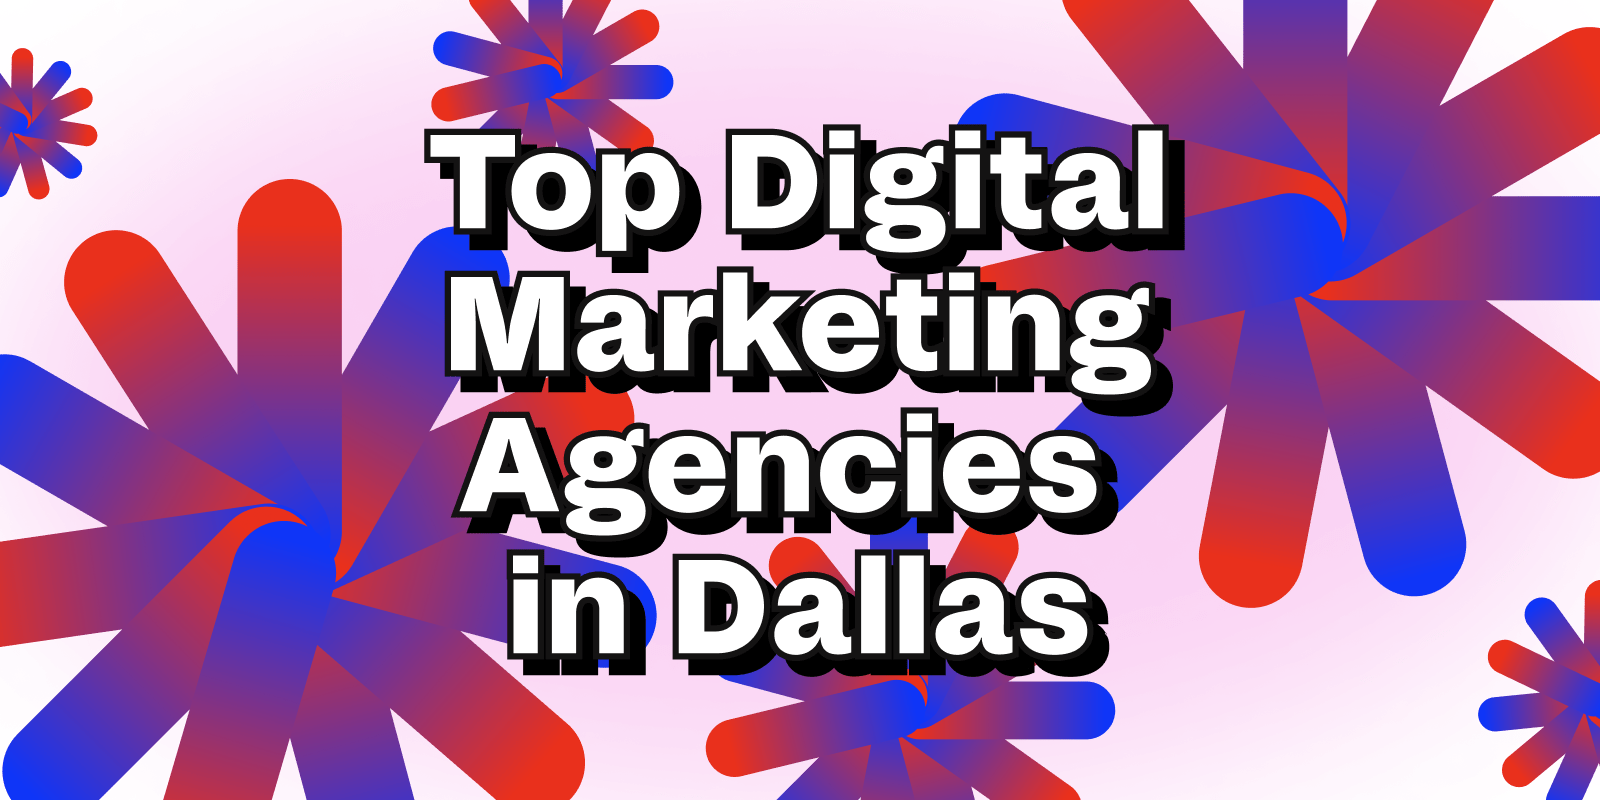 Top digital marketing agencies in Dallas